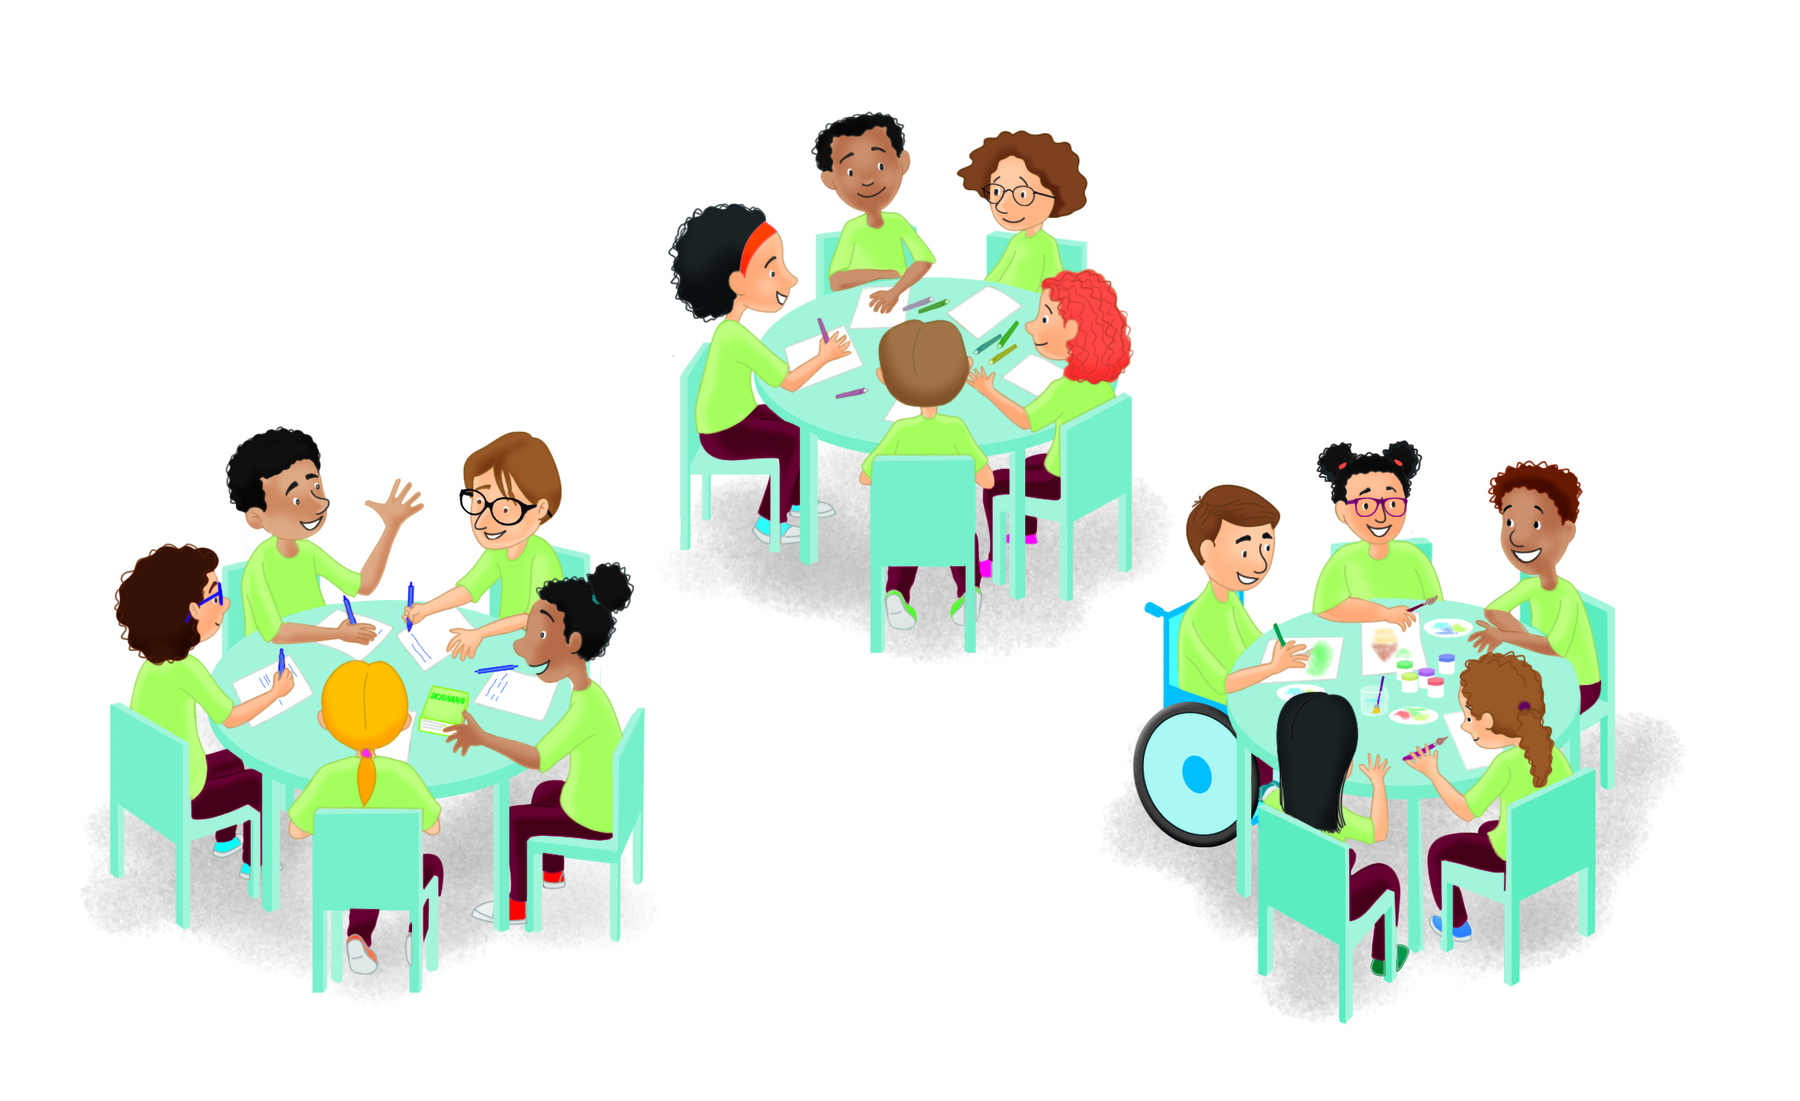 Ilustração. Três mesas redondas, cada mesa tem cinco adolescentes sentados ao redor com diferentes tipos e características físicas. Sobre as mesas cadernos, canetas, lápis, tintas.